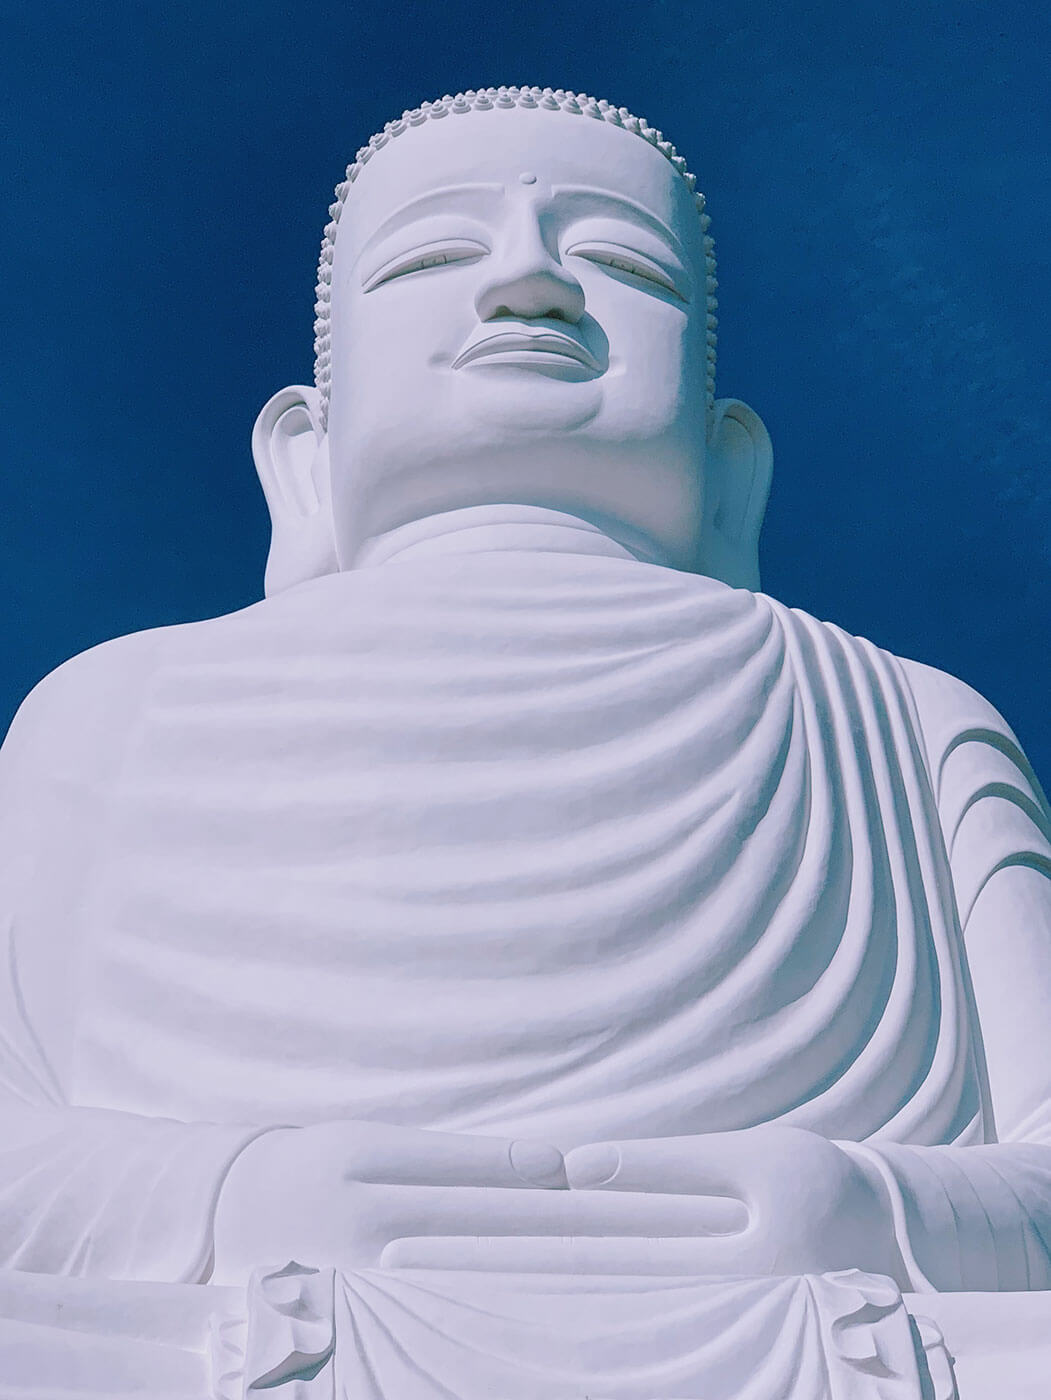 Giant Buddha at Ba Na Hills